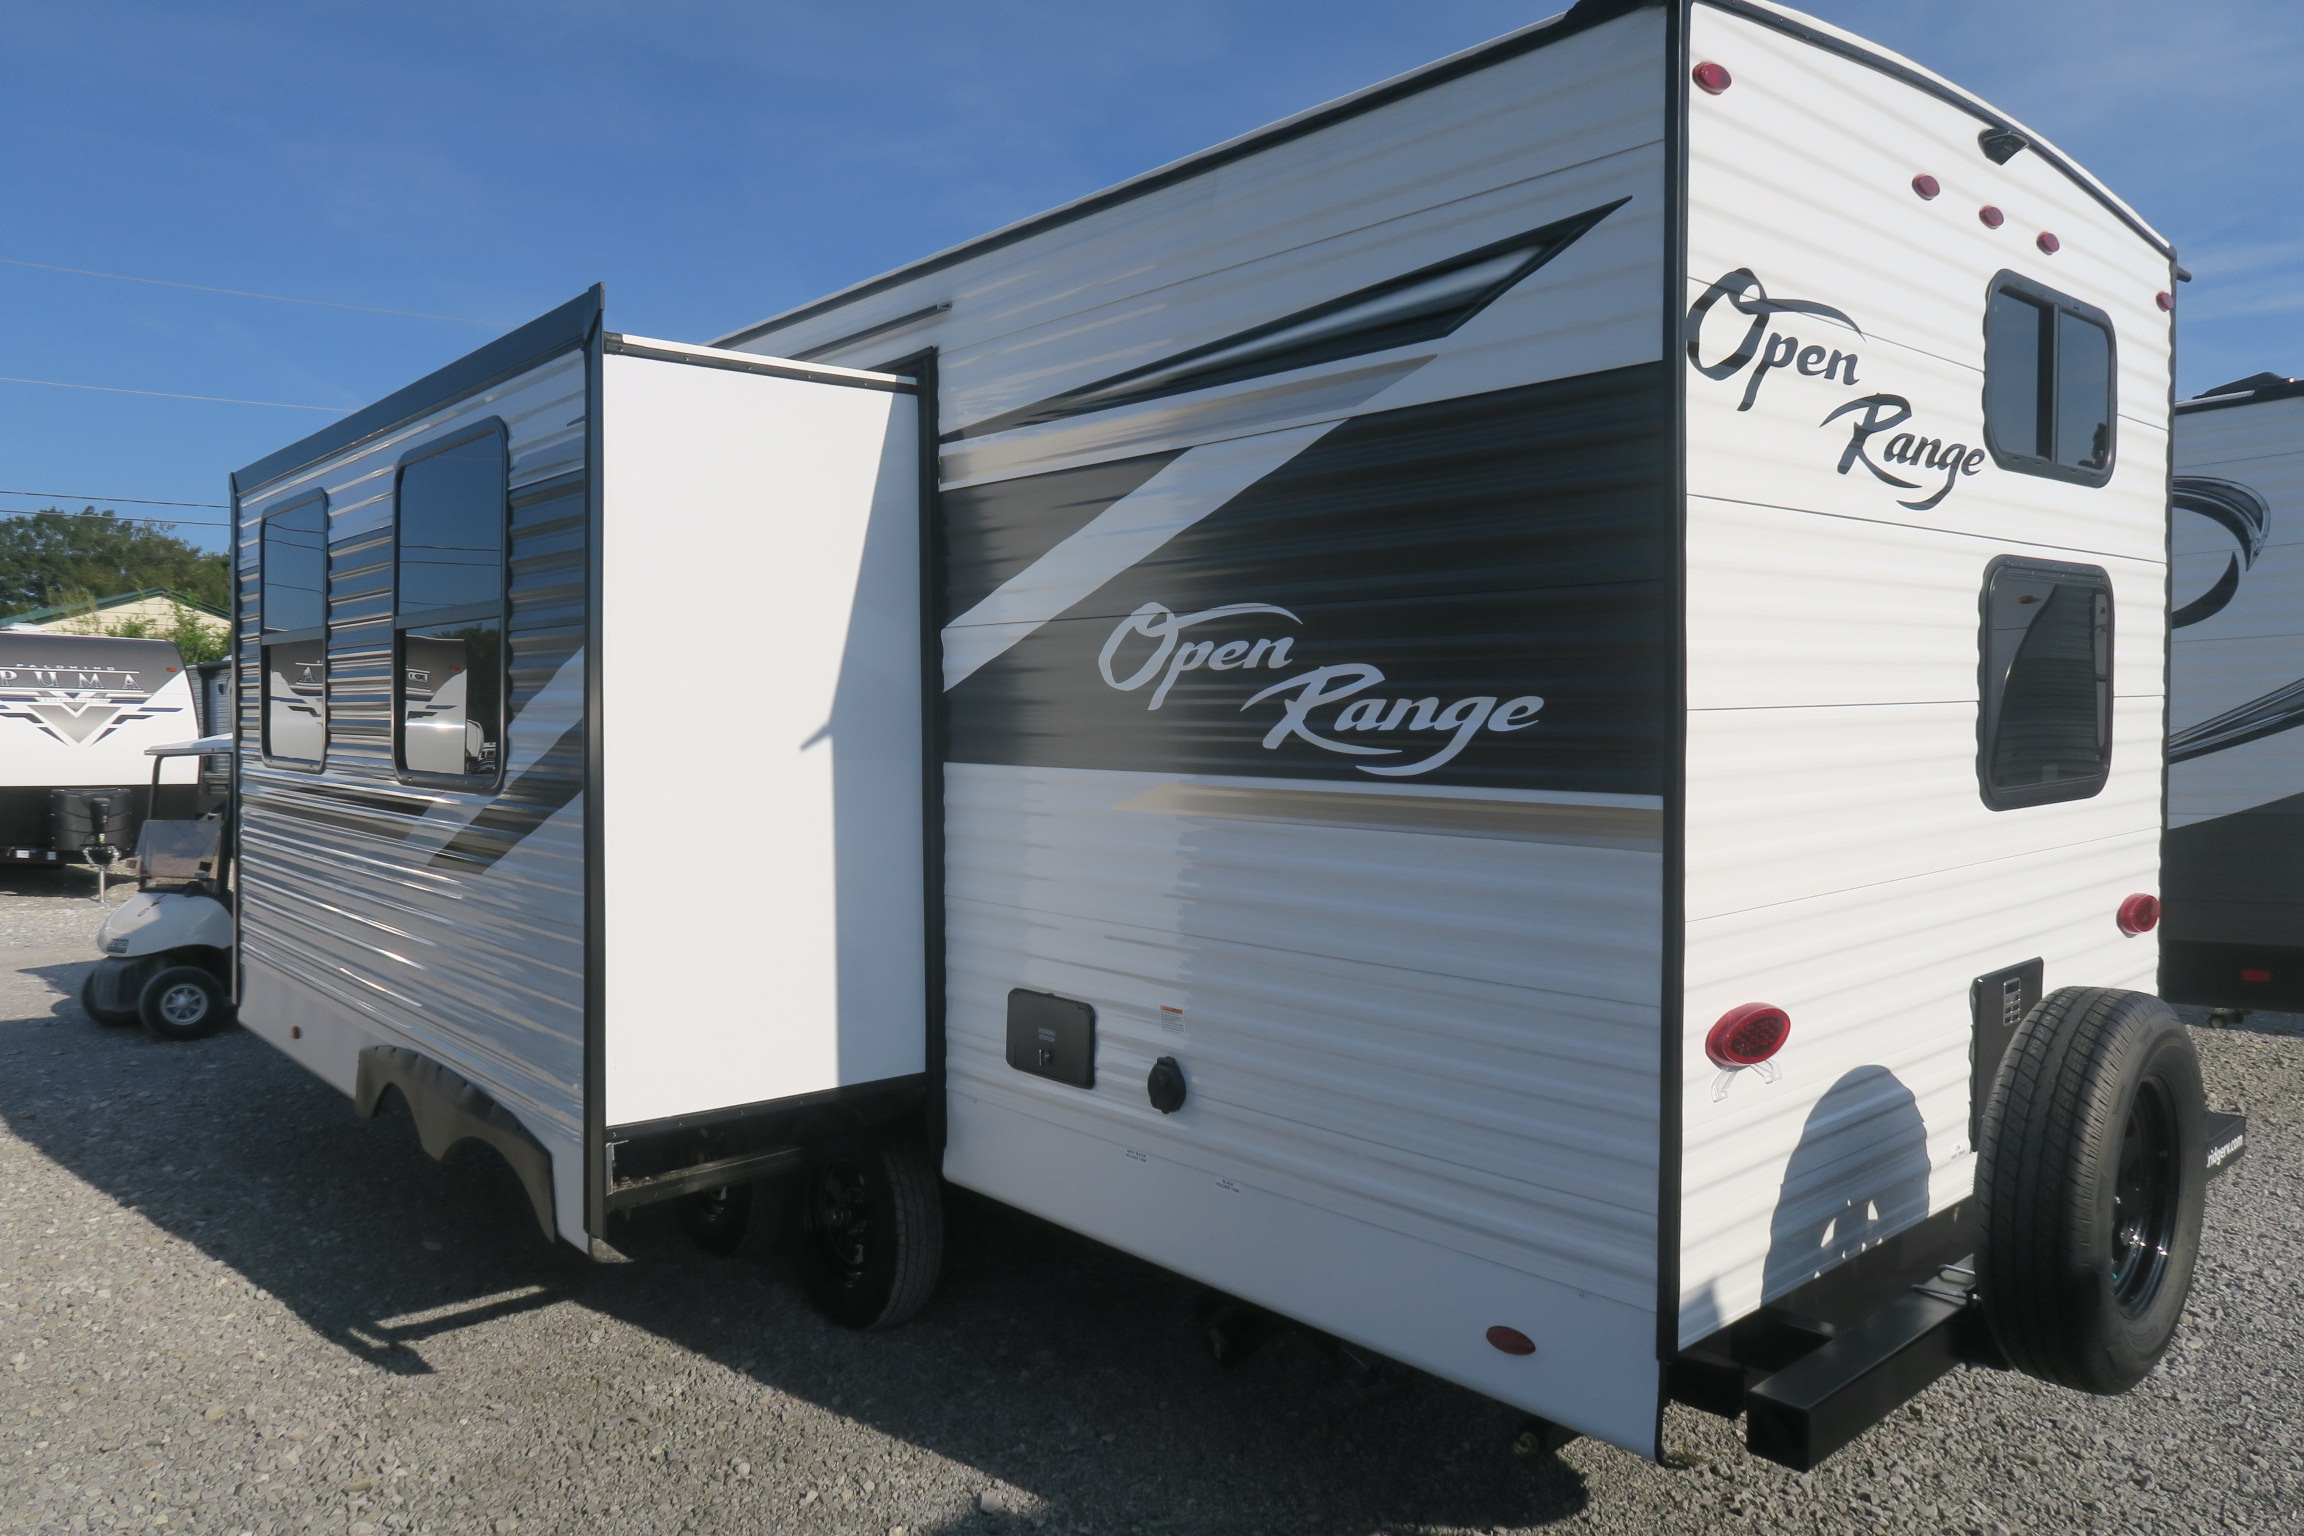 26 ft open range travel trailer